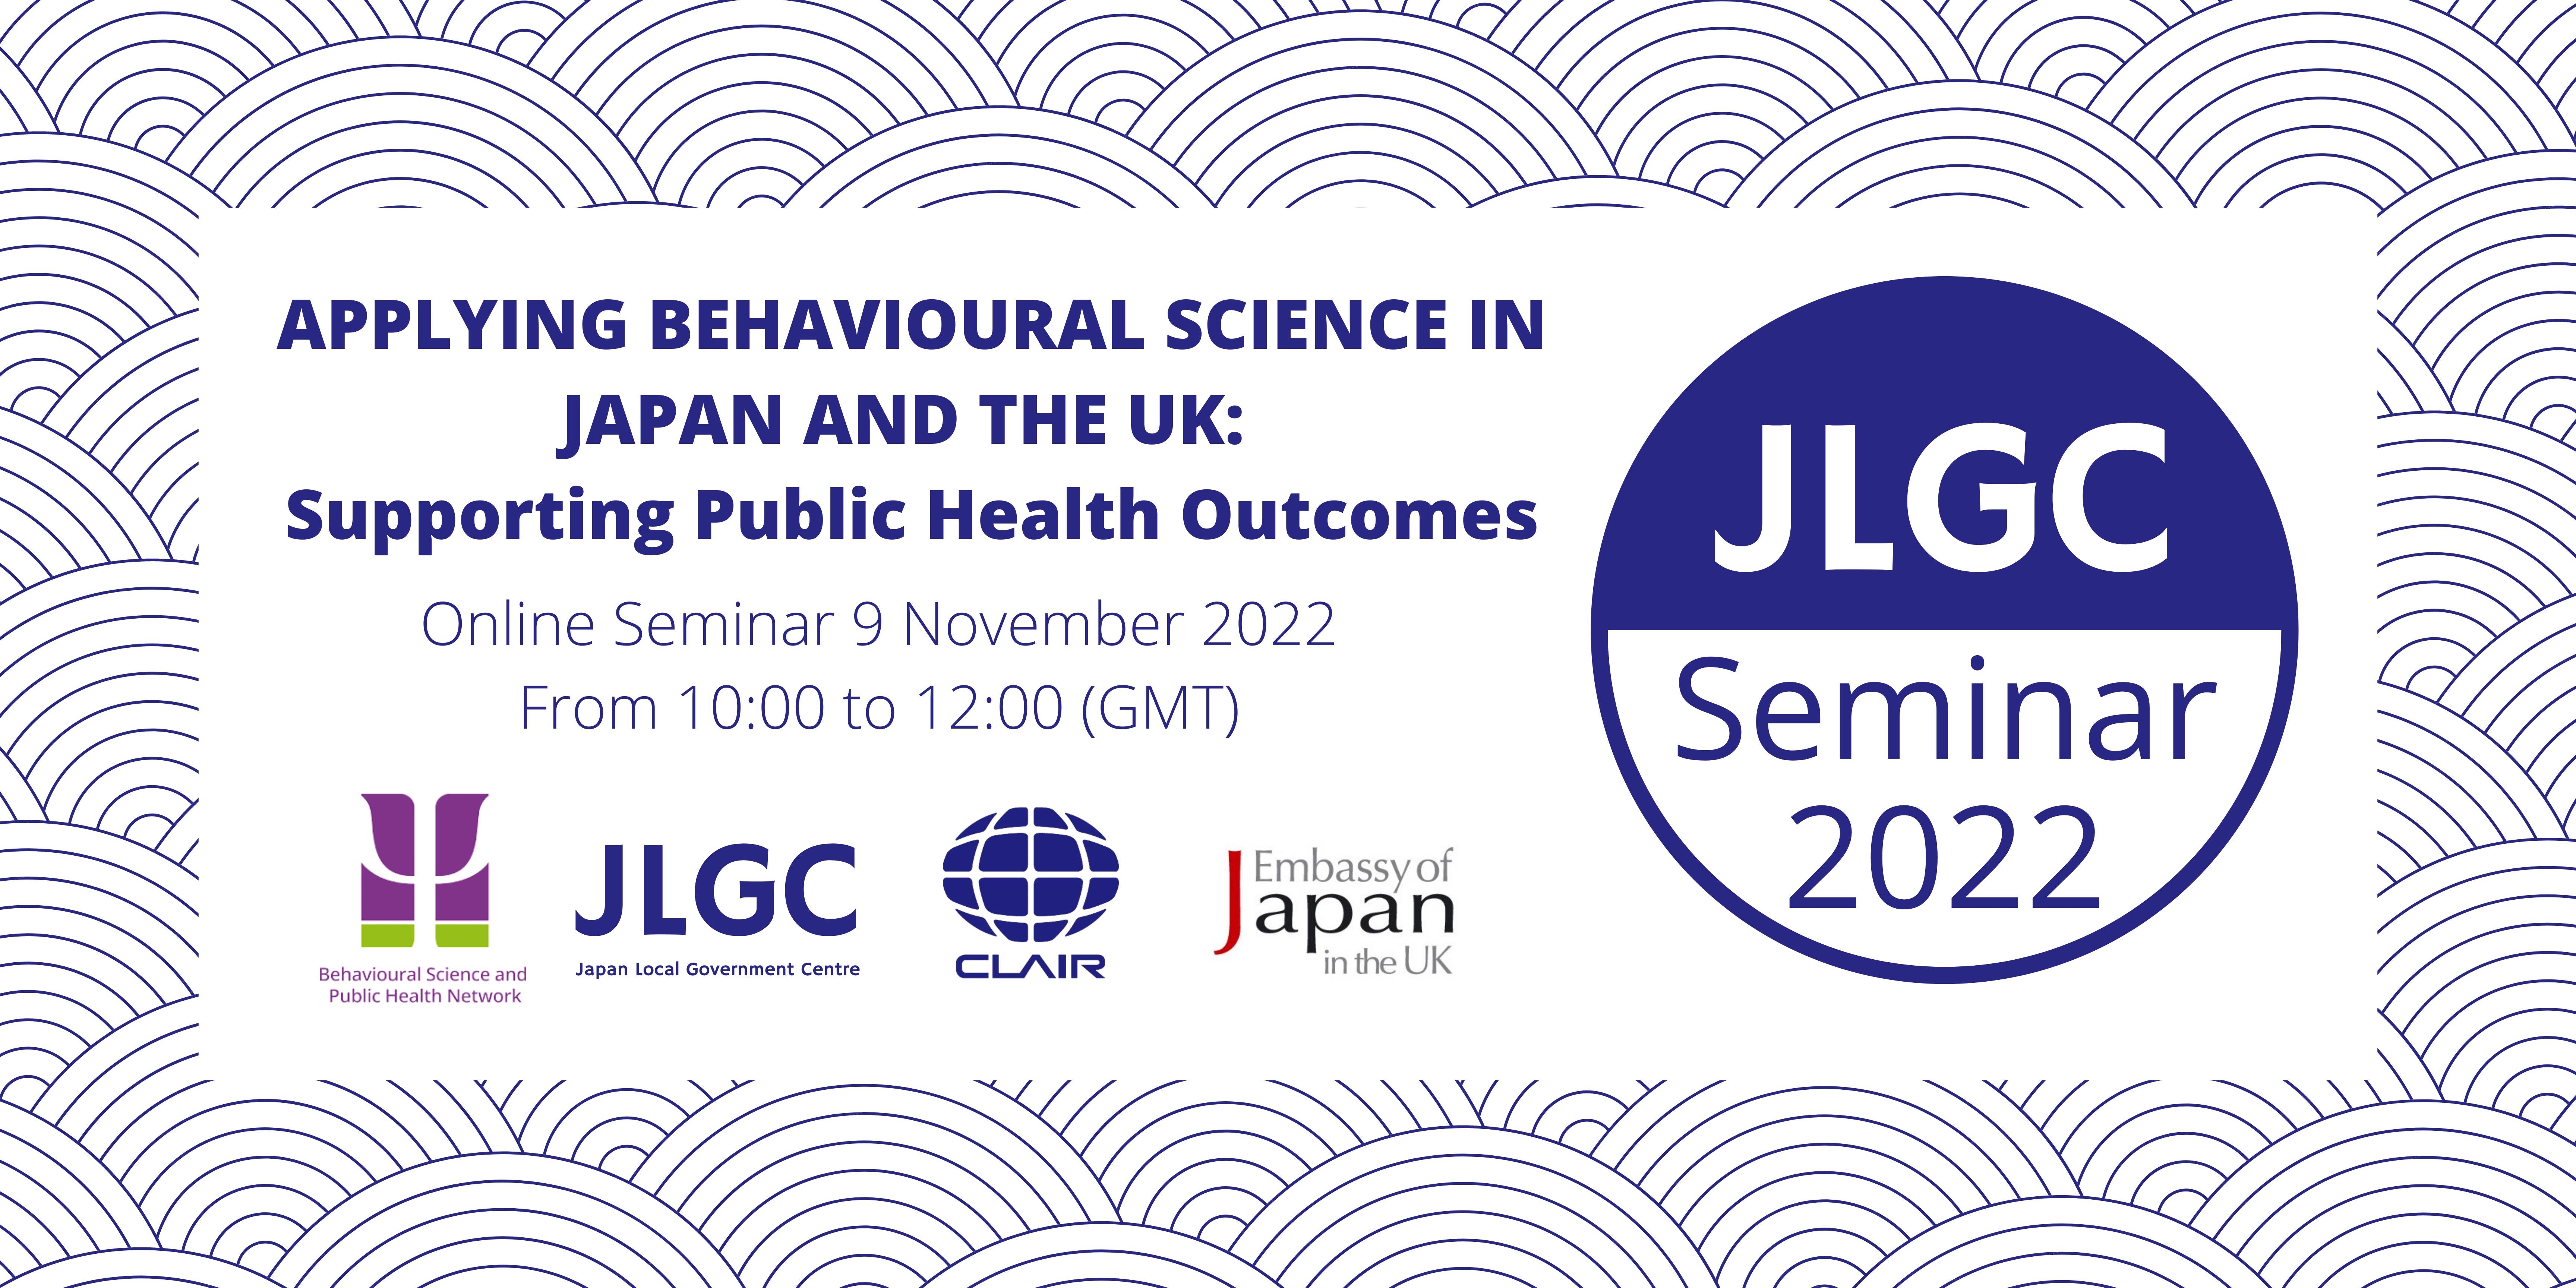 JLGC Seminar 2022 banner